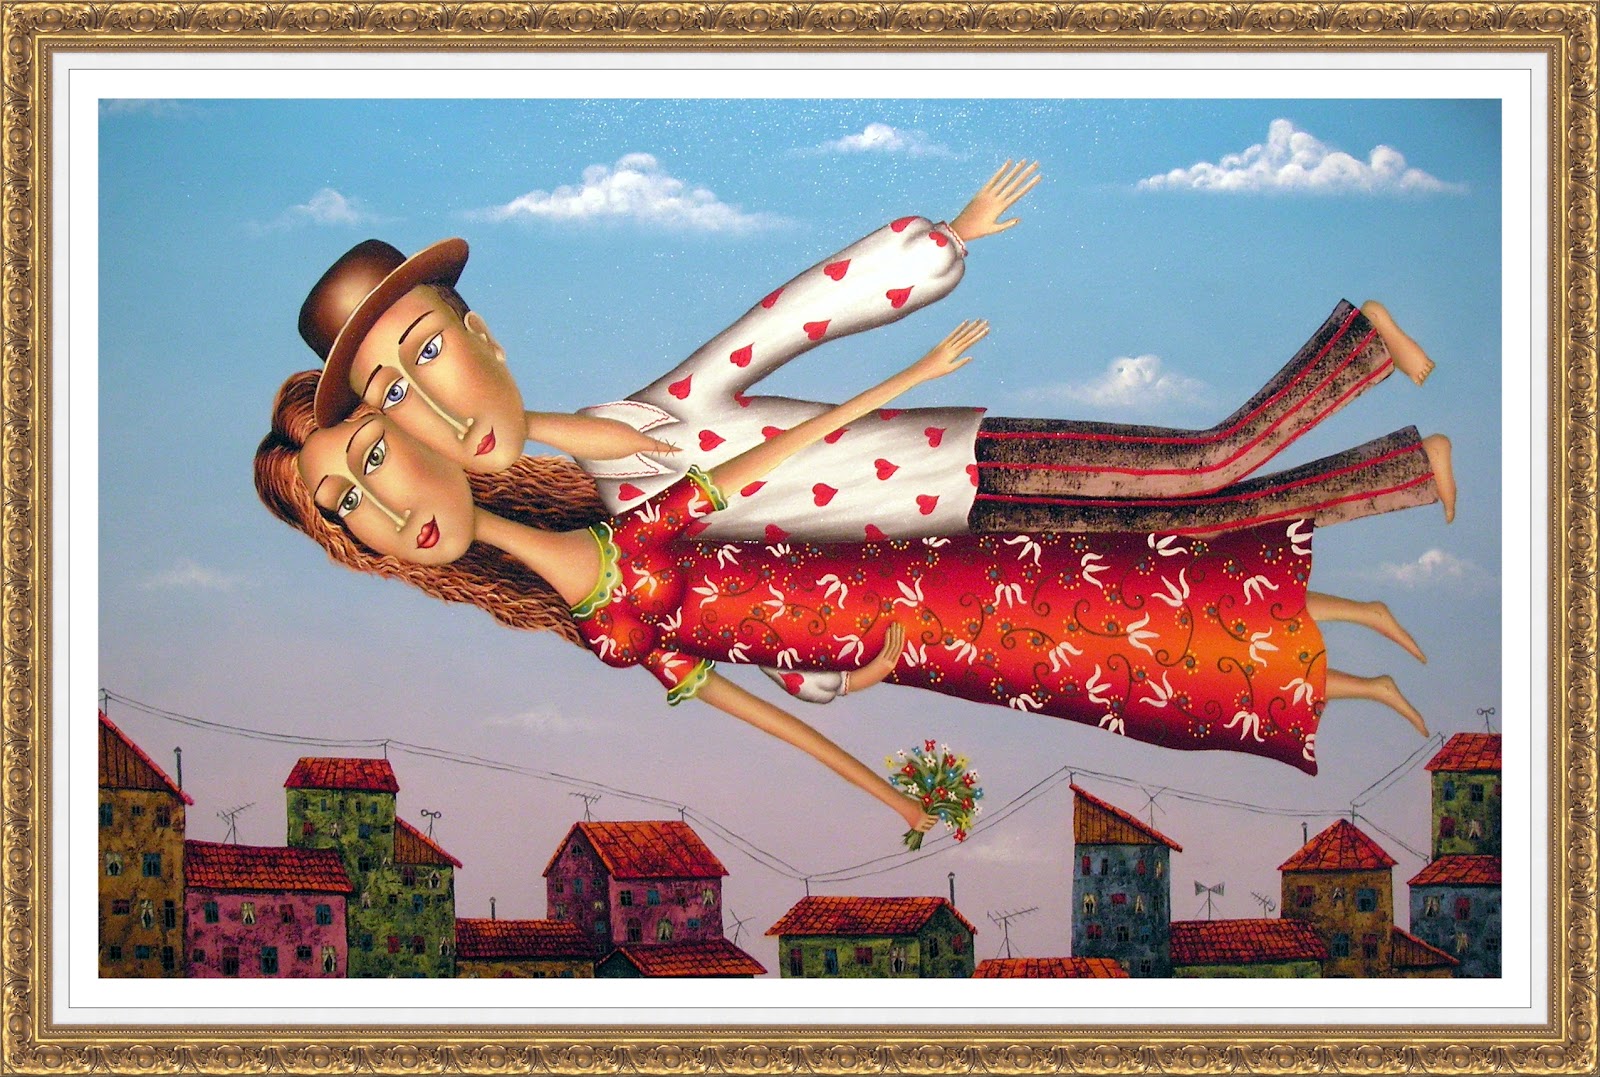 Любовь, 2009. Зураб Мартиашвили (Zurab Martiashvili) - современный грузинский художник. Современная живопись. Грузия, картины